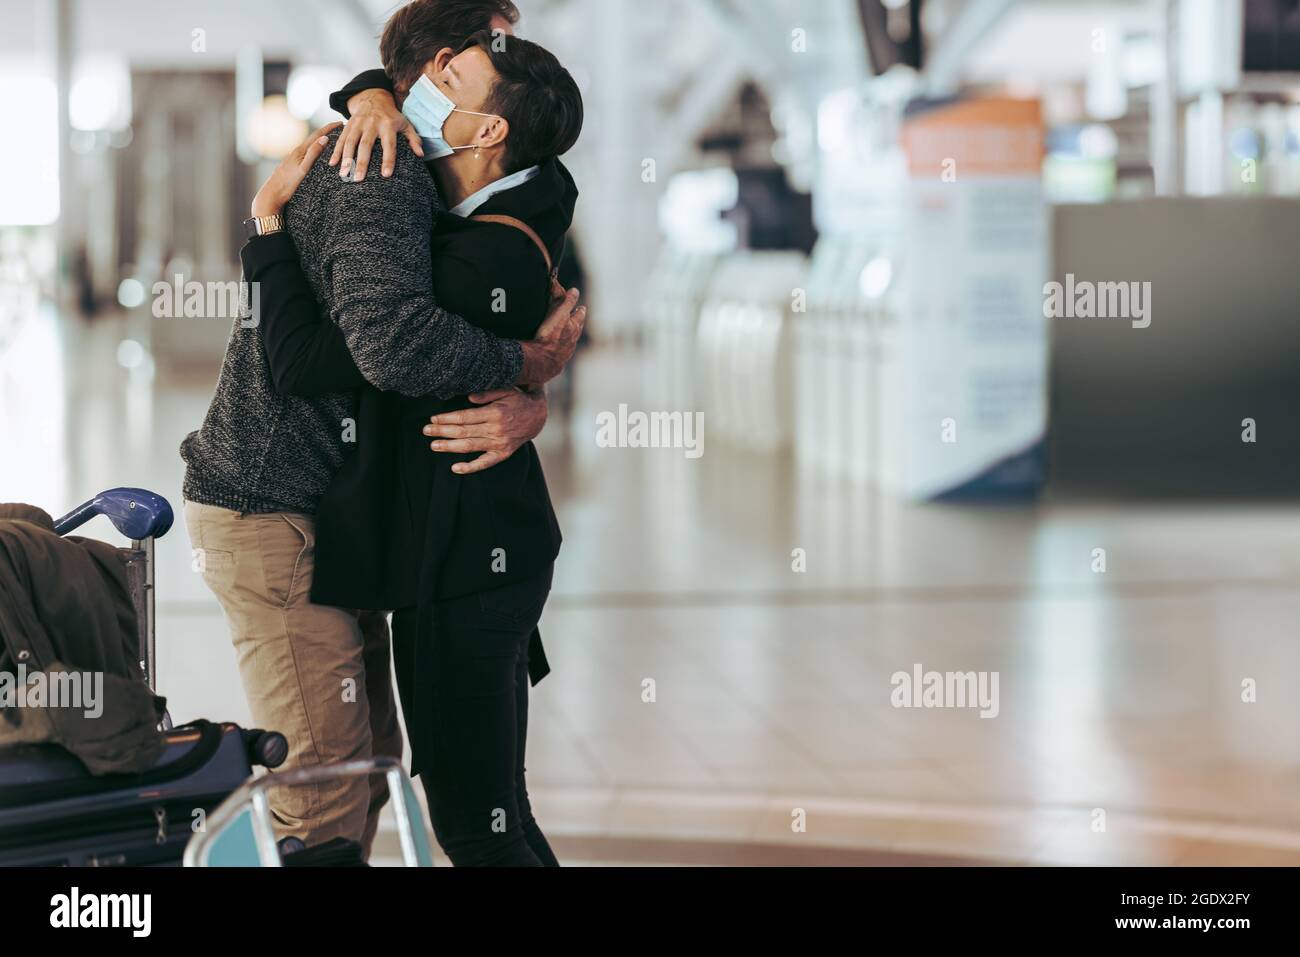 Frau in Gesichtsmaske umarmte Mann am Ankunftseingang des Flughafens. Frau umarmte und begrüßte den Mann nach einer Pandemie am Flughafen. Stockfoto